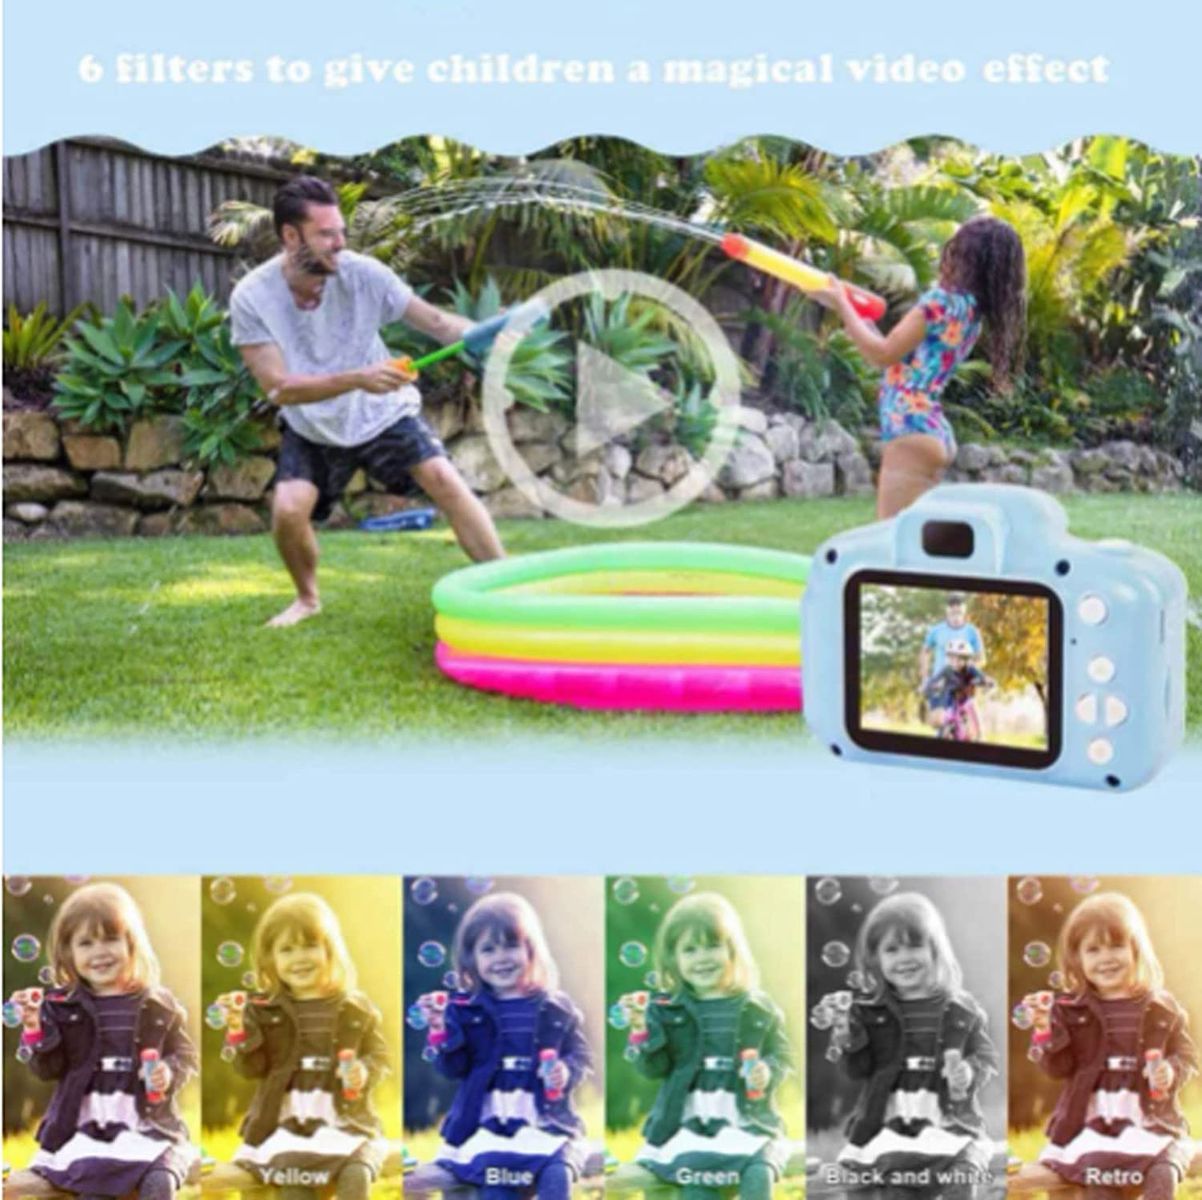 Kinder Kamera, 2,0 Zoll HD-Bildschirm 1080P 32 GB Digital Fotokamera Selfie und Videokamera, Geburtstagsgeschenkspielzeug für Jungen und Mädchen von 3 bis 12 Jahren（Mit Kartenleser ）